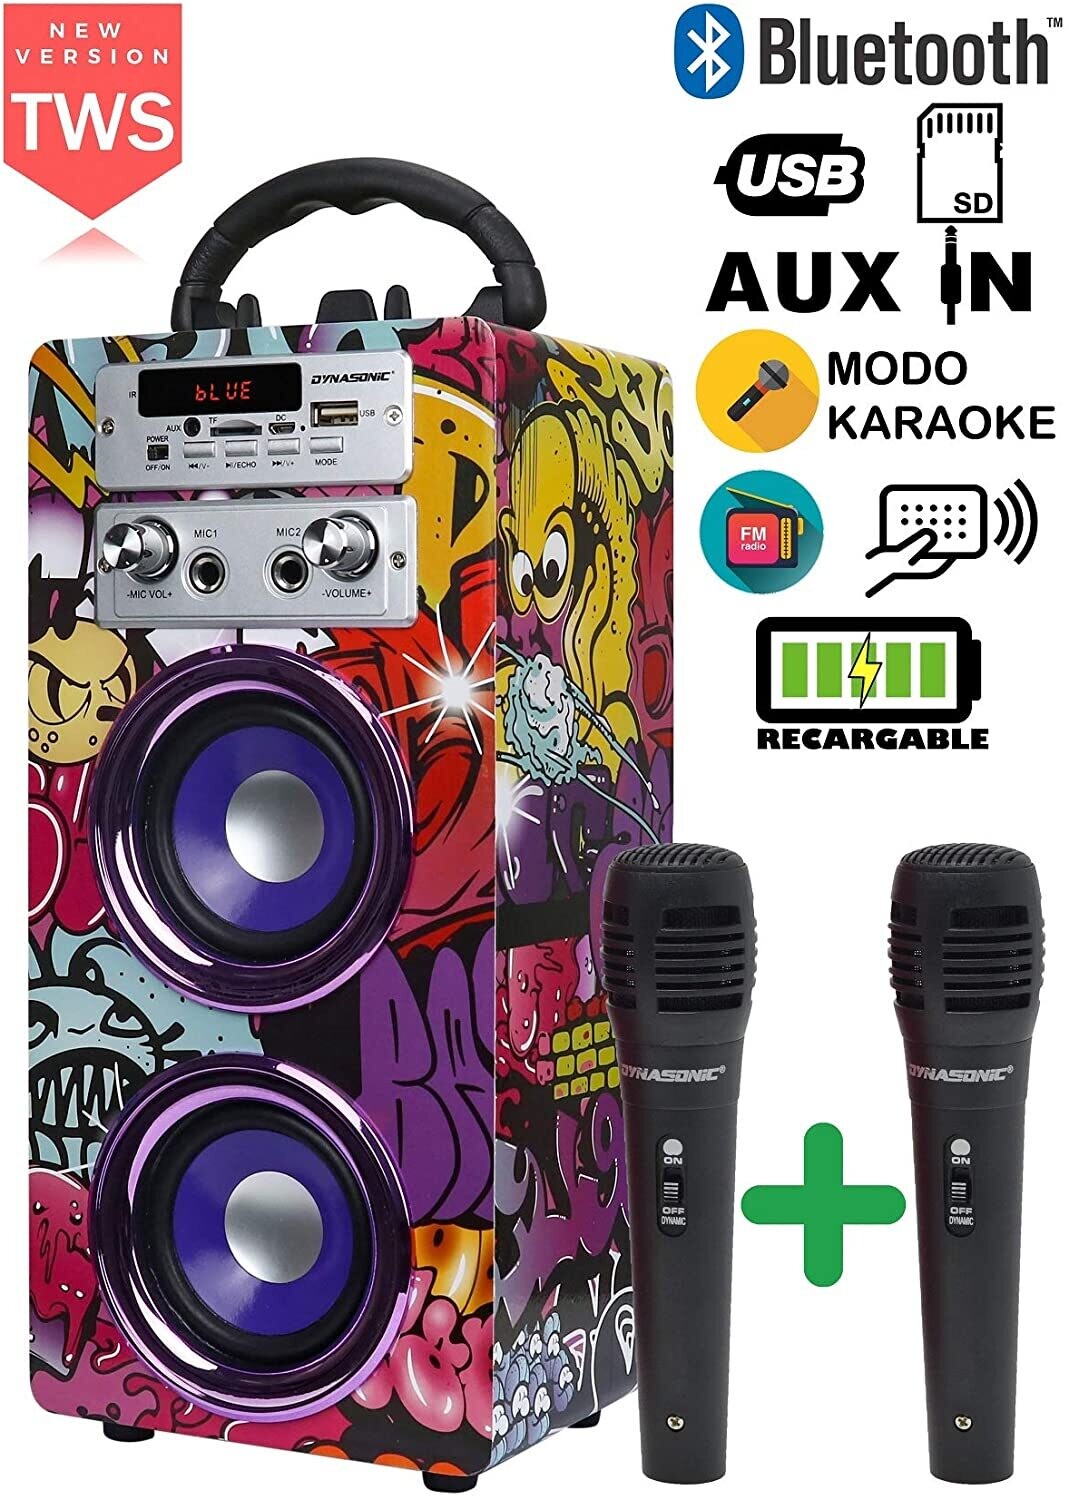 Karaoké - DYNASONIC - (3e génération) Haut-Parleur Bluetooth Portable avec Mode karaoké et Microphone, Radio FM et Lecteur USB SD (modèle 12, 2 Microphones)